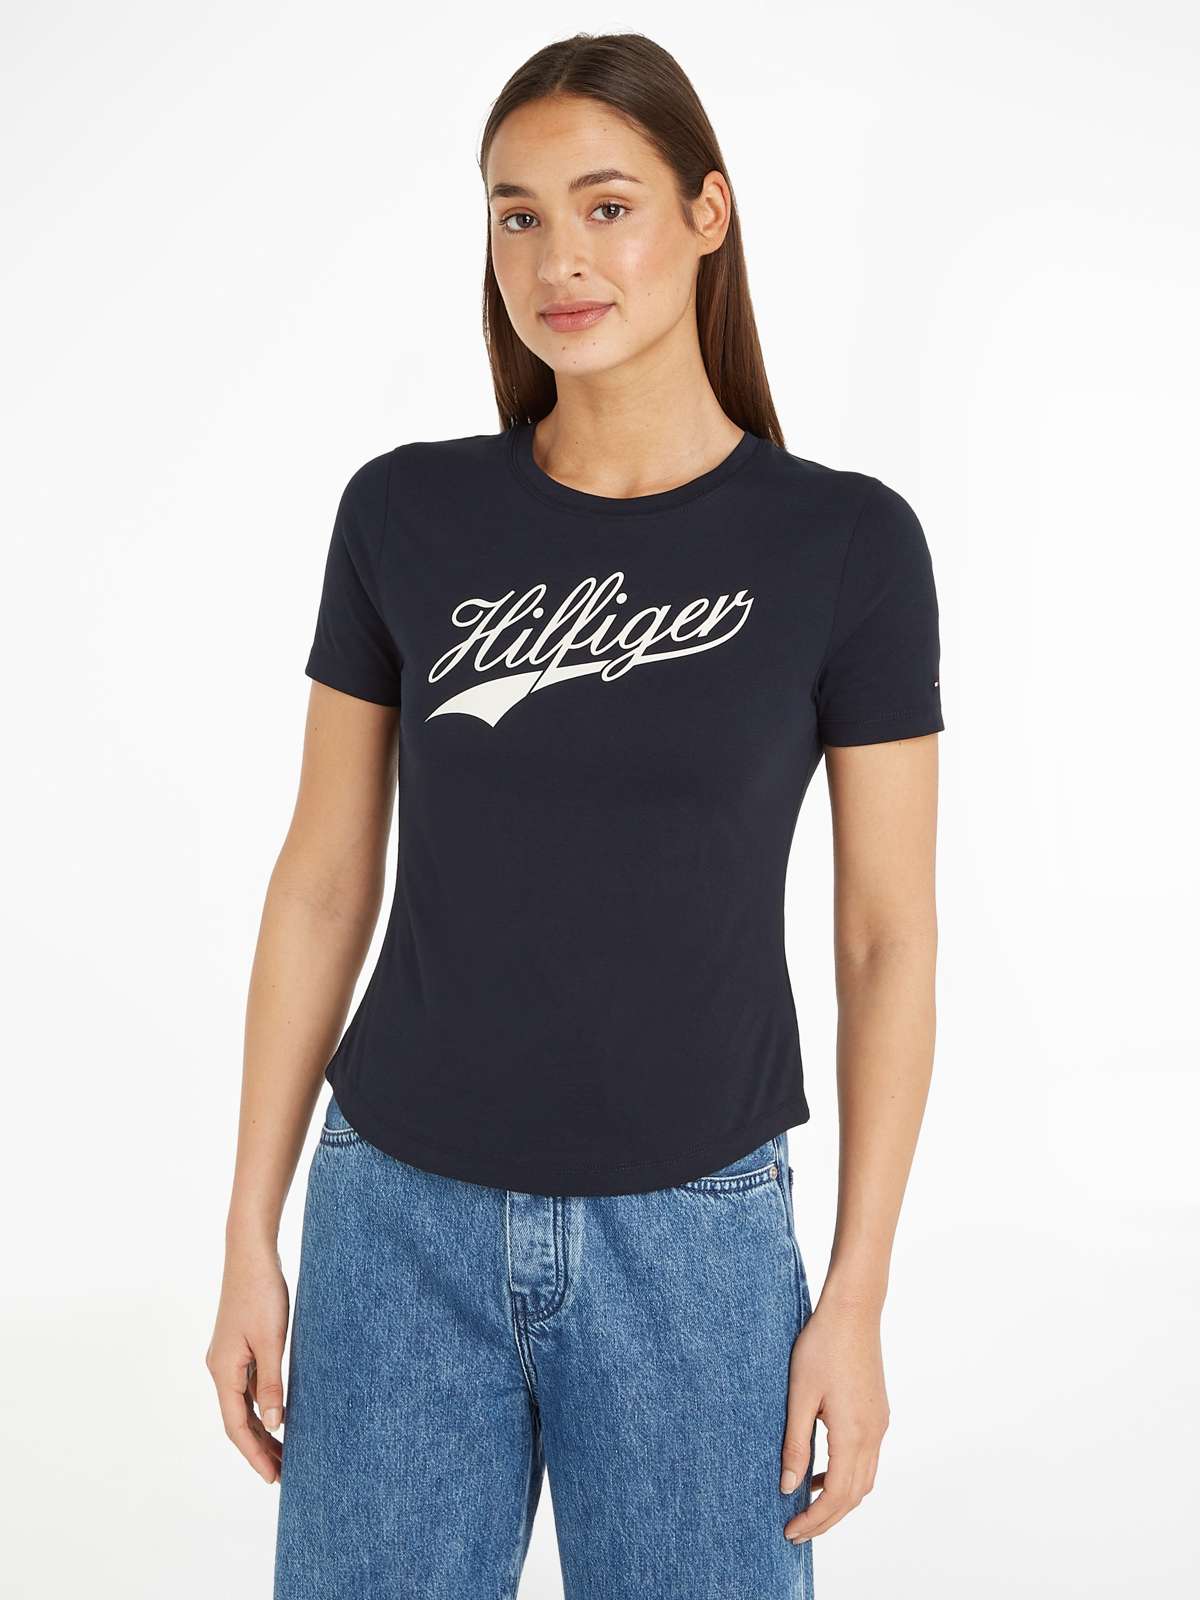 Рубашка с круглым вырезом и большой надписью-логотипом Hilfger.